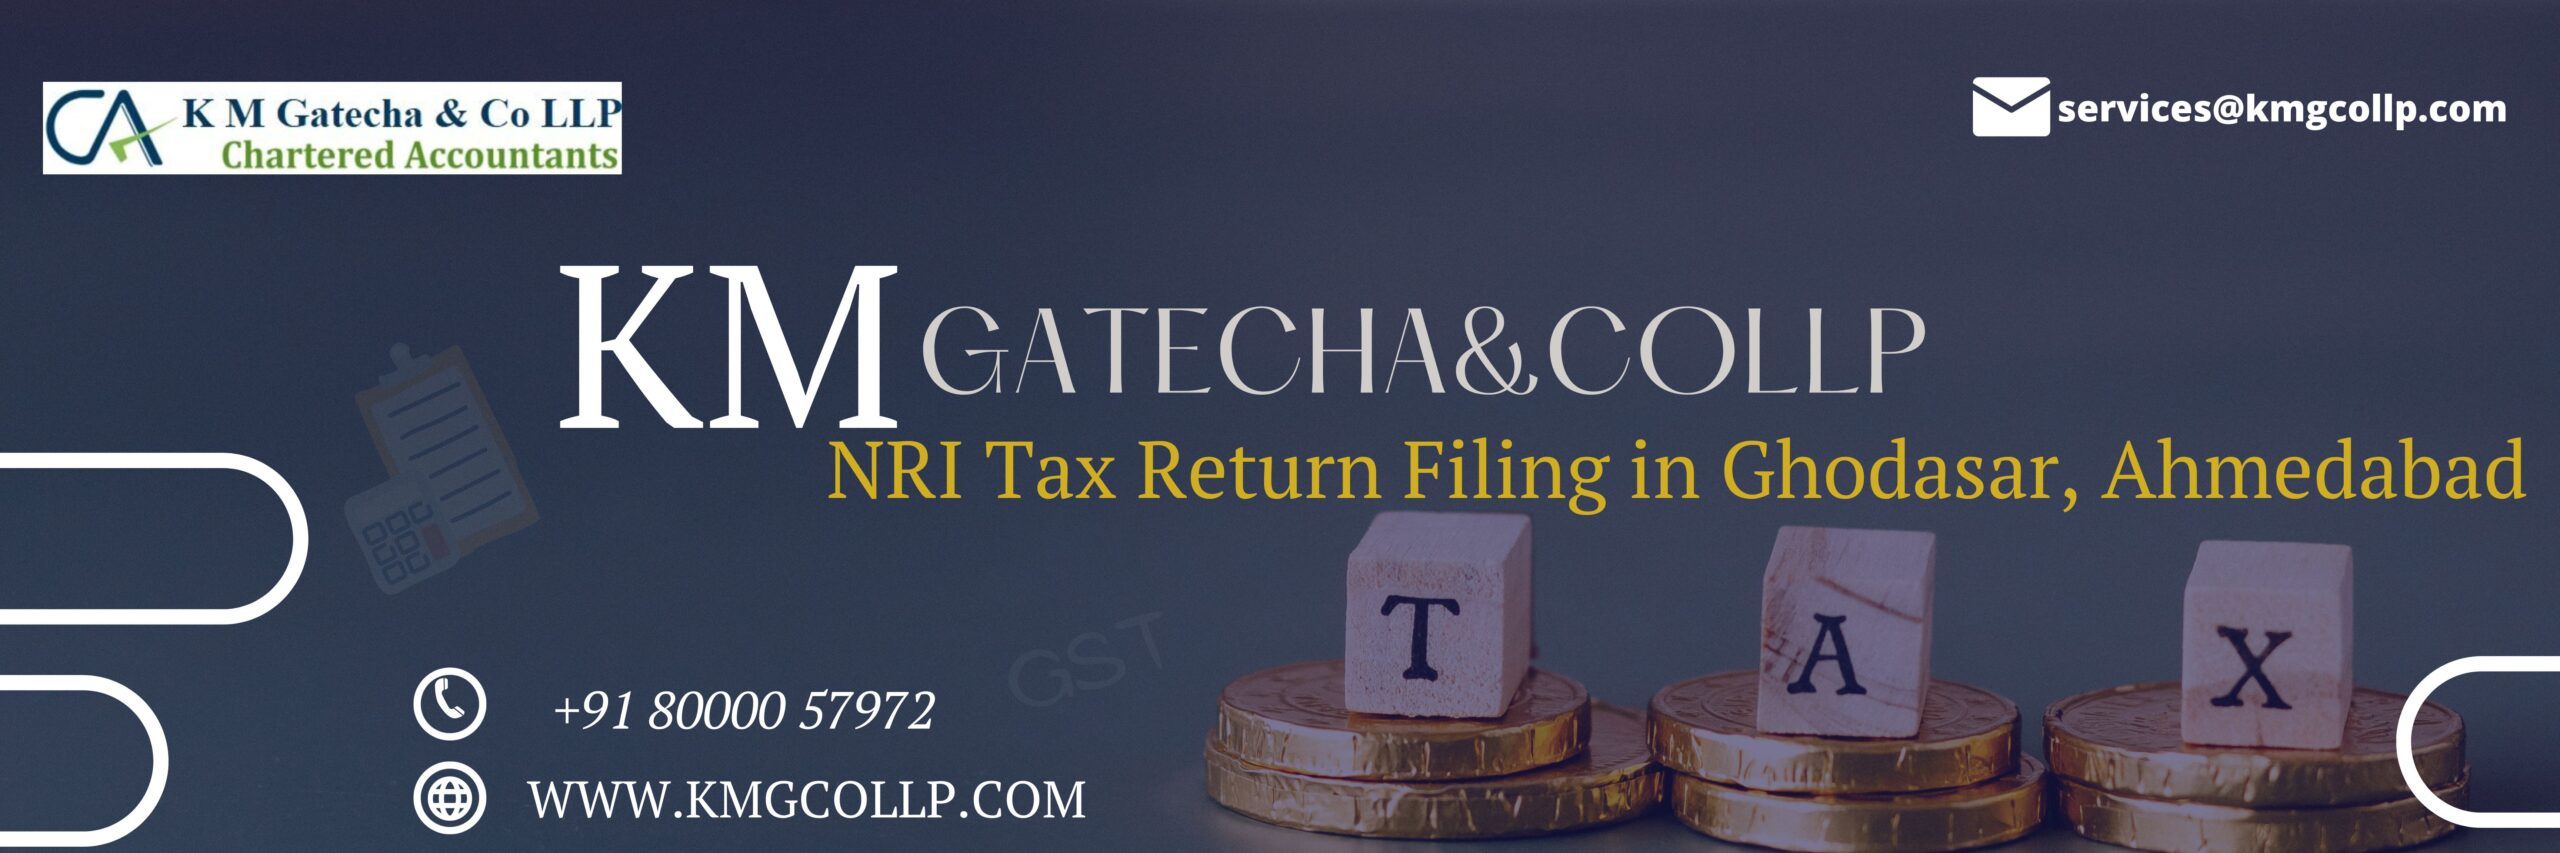 NRI Tax Return Filing in Ghodasar